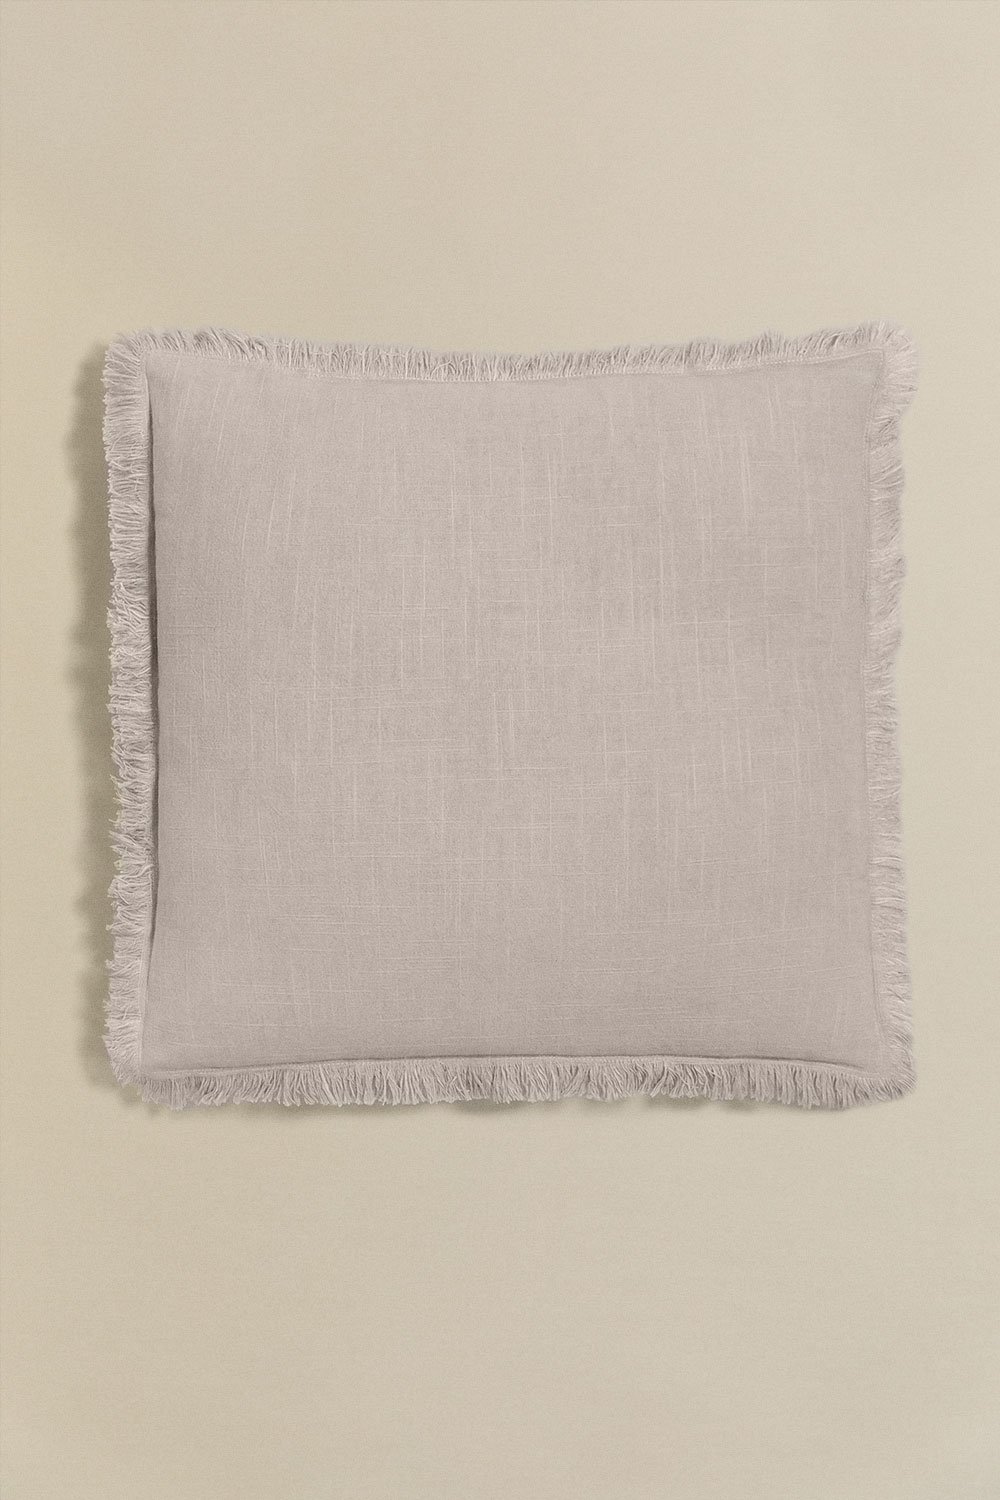 Cuscino quadrato in cotone (45x45 cm) Nedeliya, immagine della galleria 1